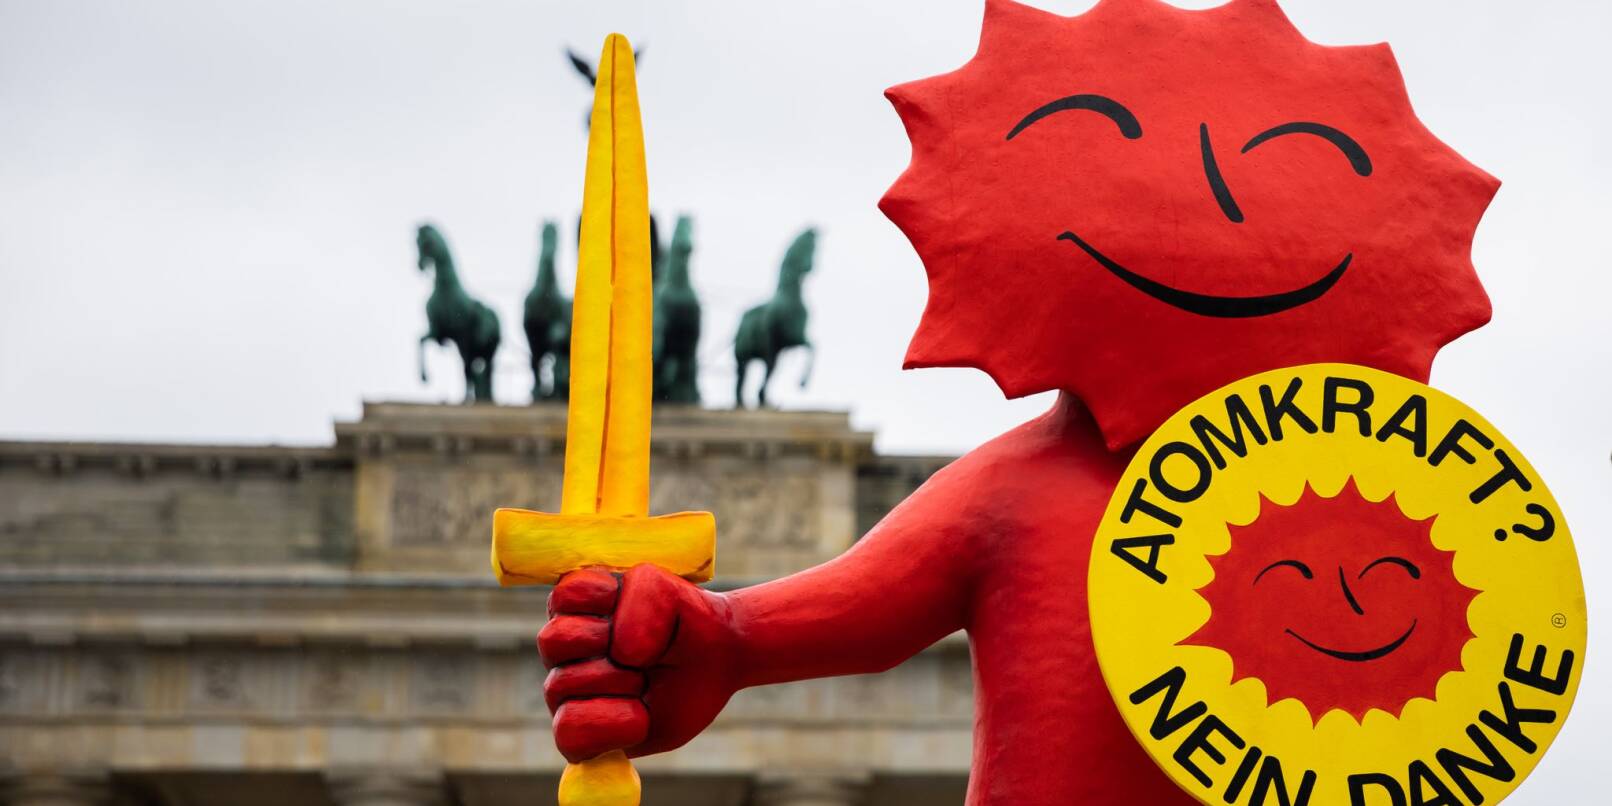 Die Umweltorganisation Greenpeace feiert den Atomausstieg mit einer Aktion am Brandenburger Tor.